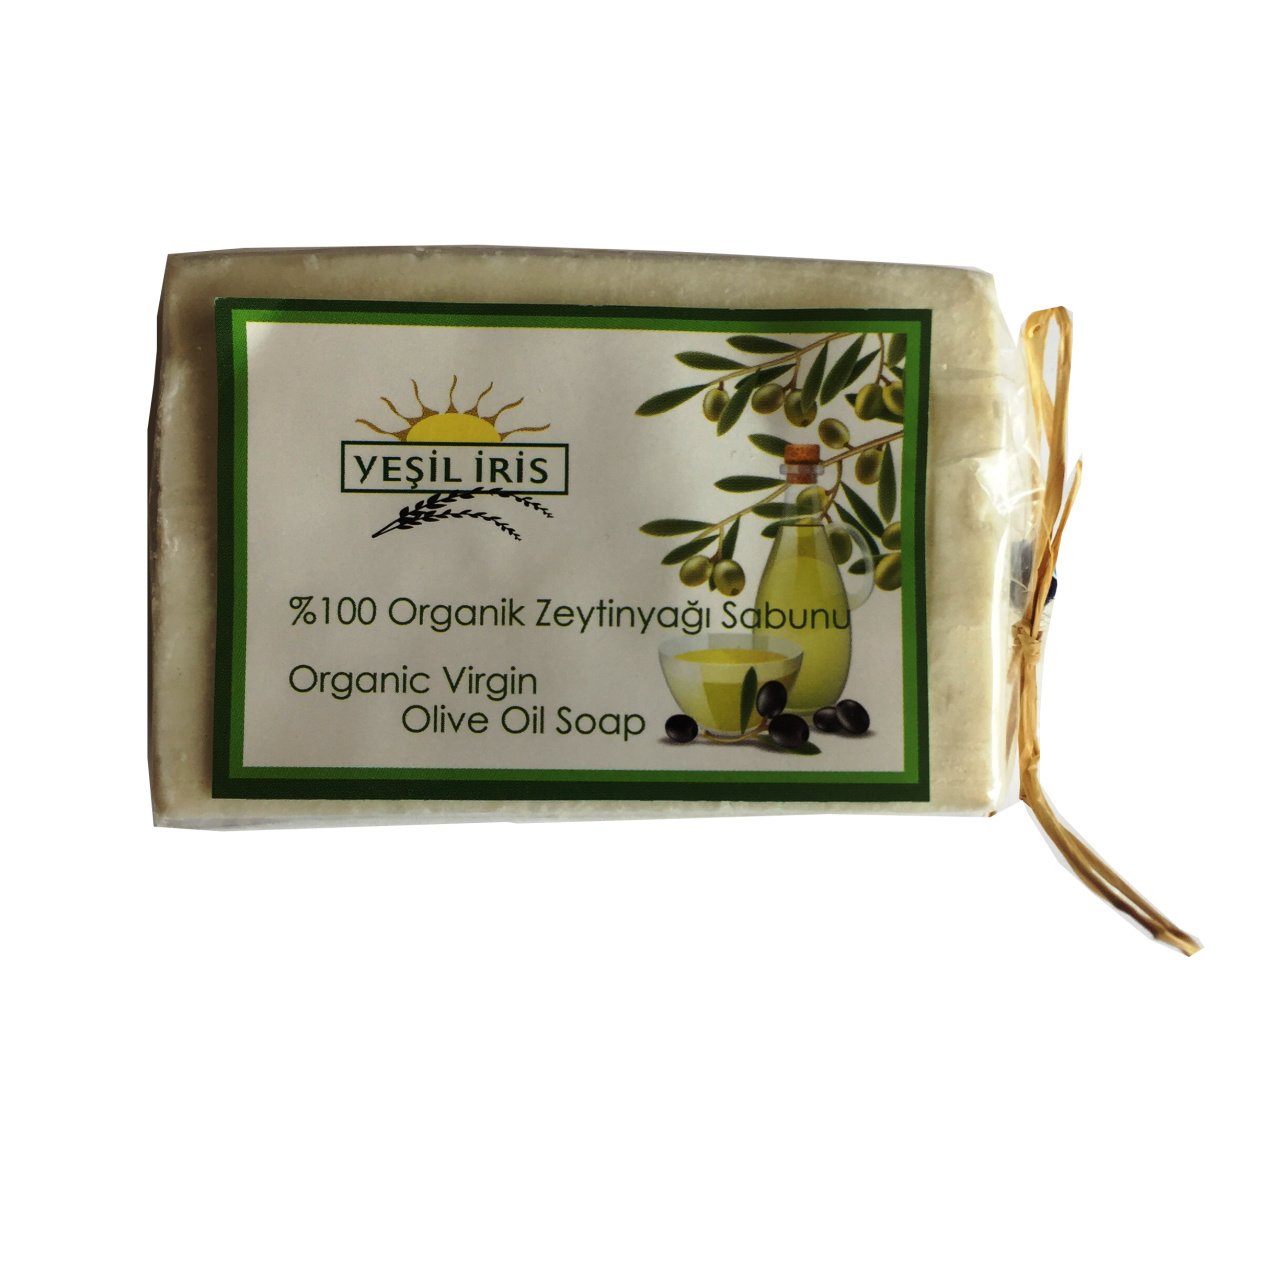 Yeşil İris Organik Zeytinyağı Sabunu ( 150 g )